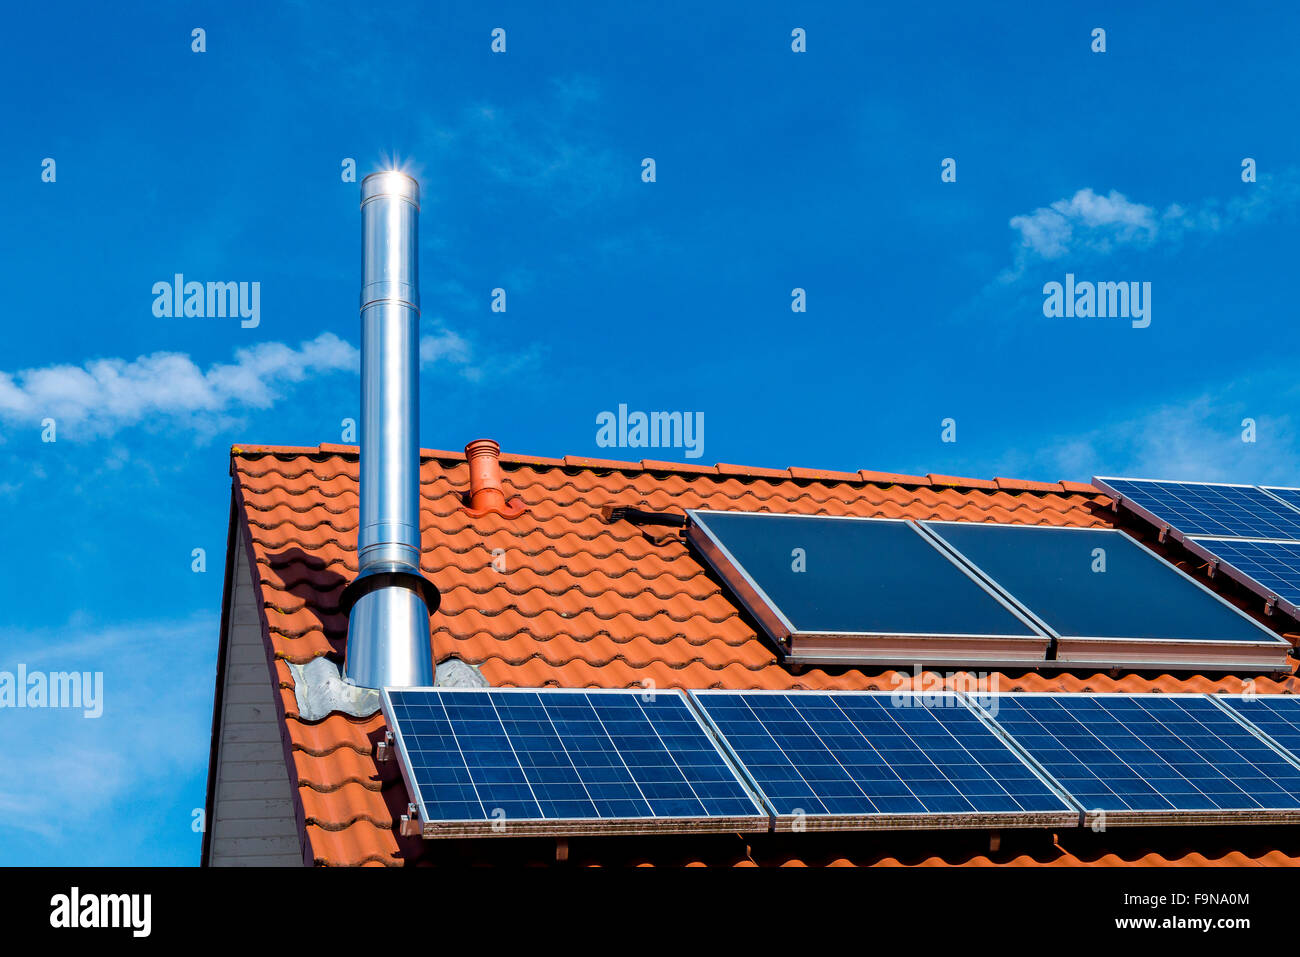 Casa con techo de paneles solares, acero inoxidable de chimenea, transición energética Foto de stock